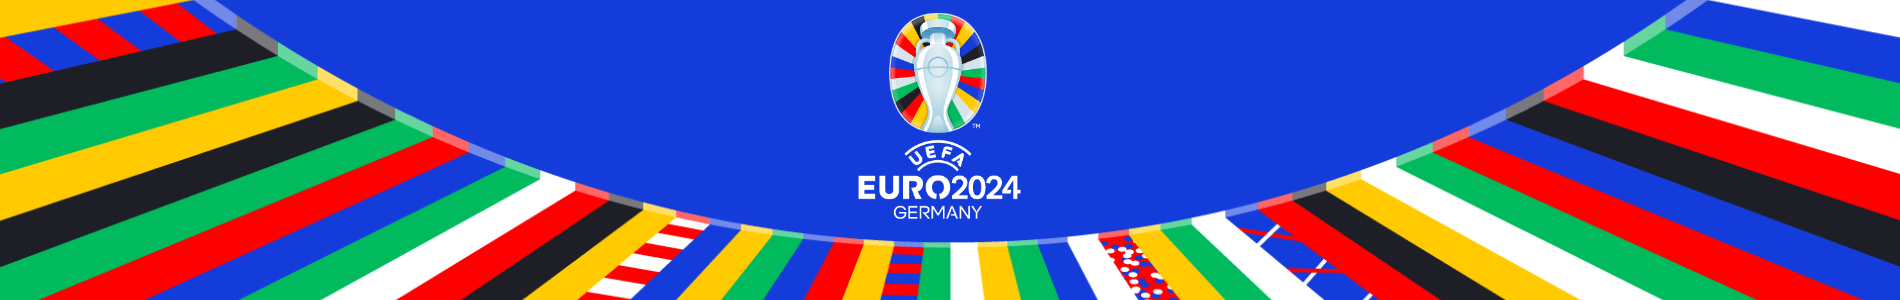 maillots euro 2024